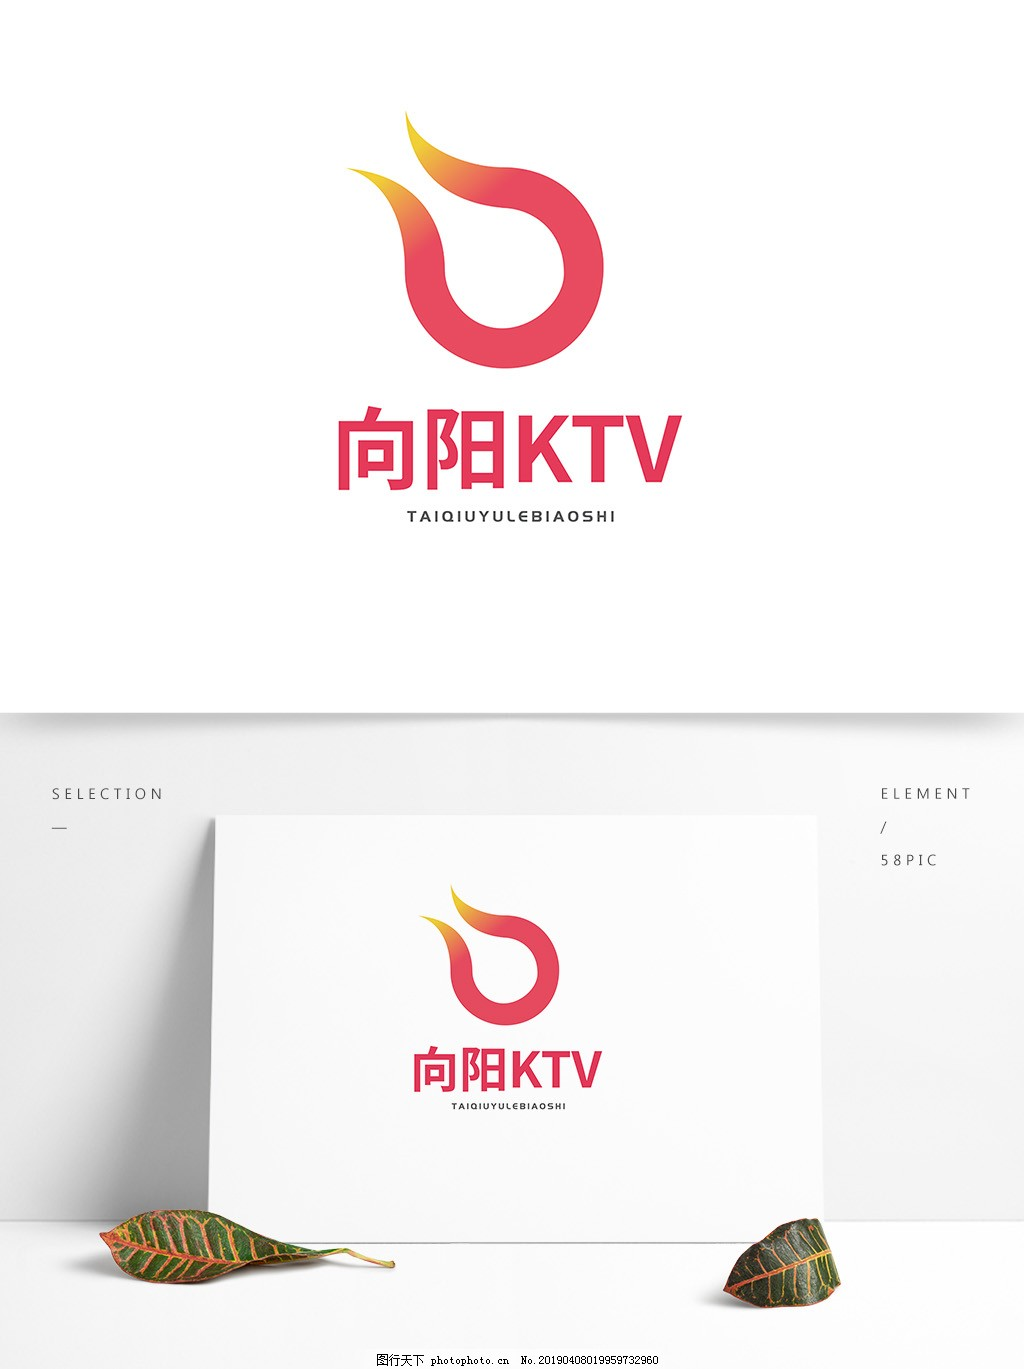 ‘~向阳ktv标志logo图片_企业LOGO标志_标志图标-  ~’ 的图片